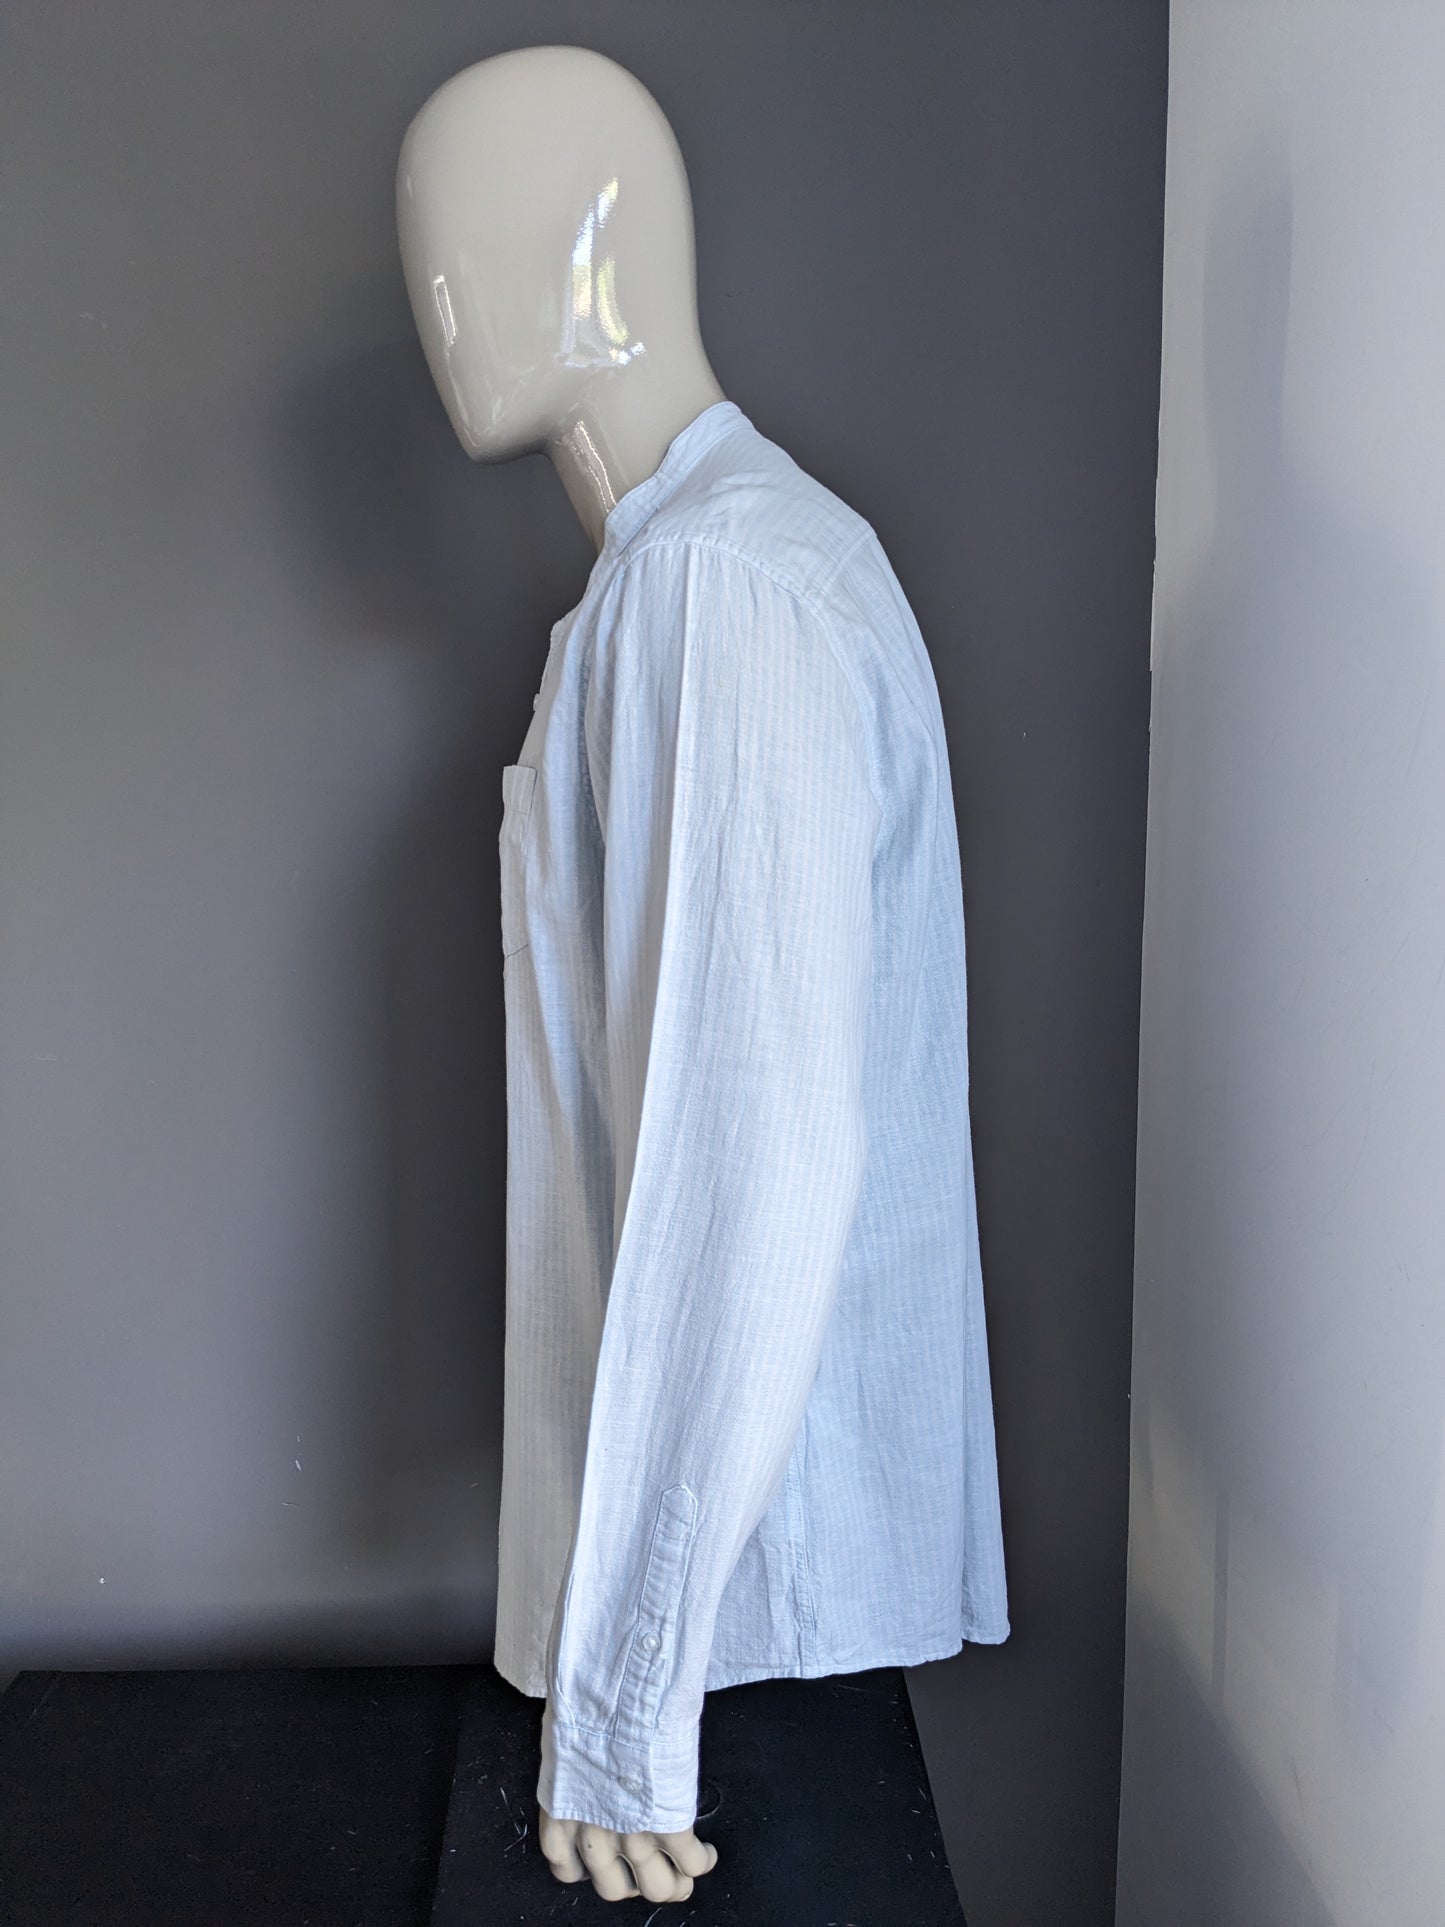 F & F -Leinenhemd mit kurzem Kragen. Blau weiß gestreift. Größe xxl / 2xl.